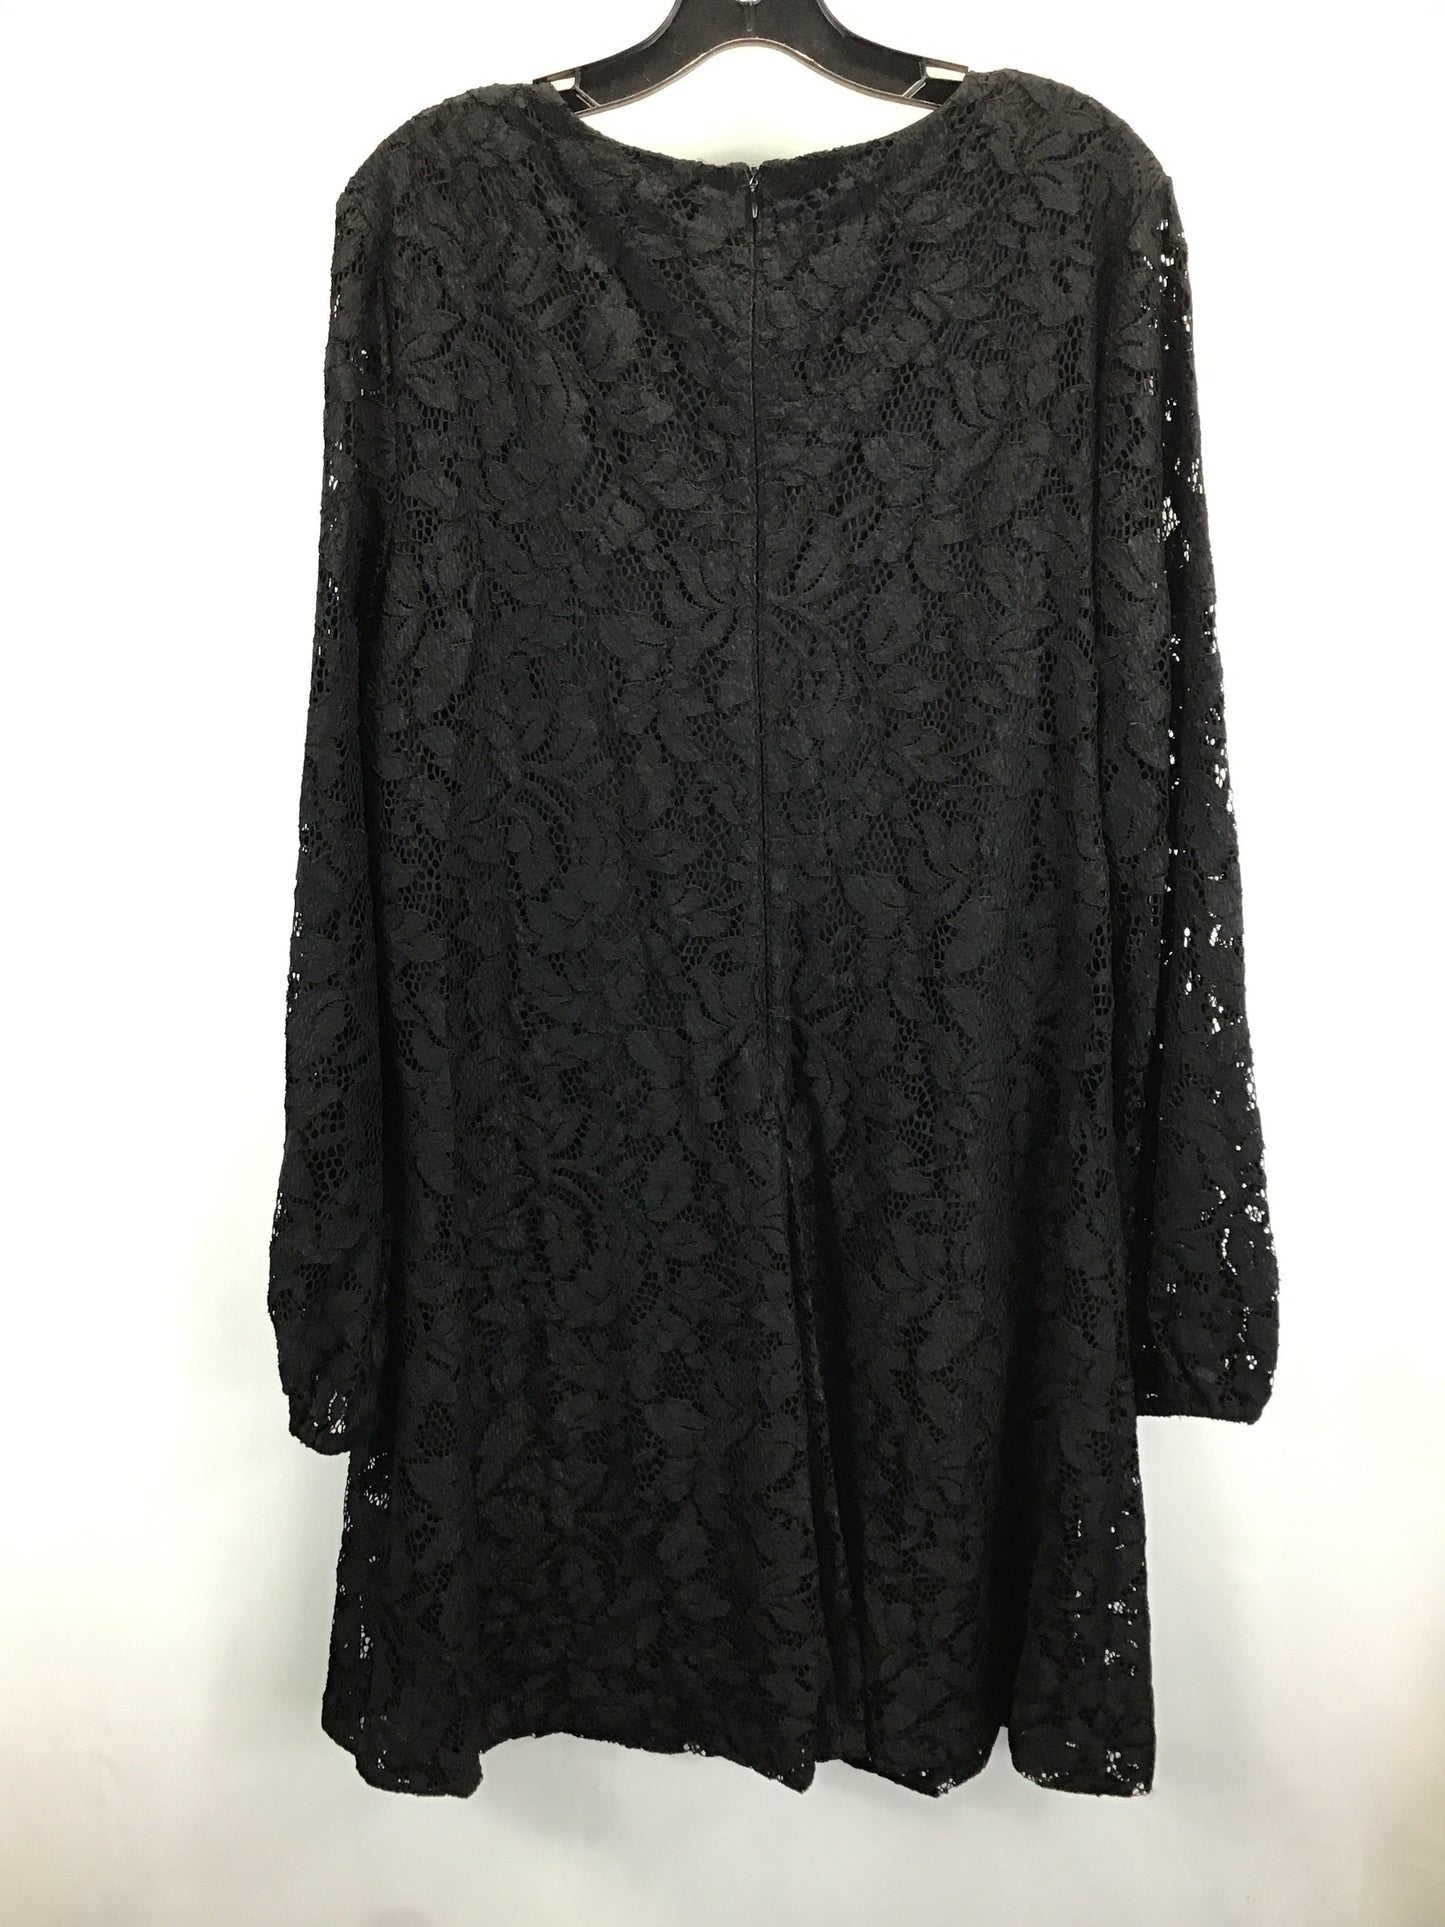 Black Dress Work Lauren By Ralph Lauren, Size 16